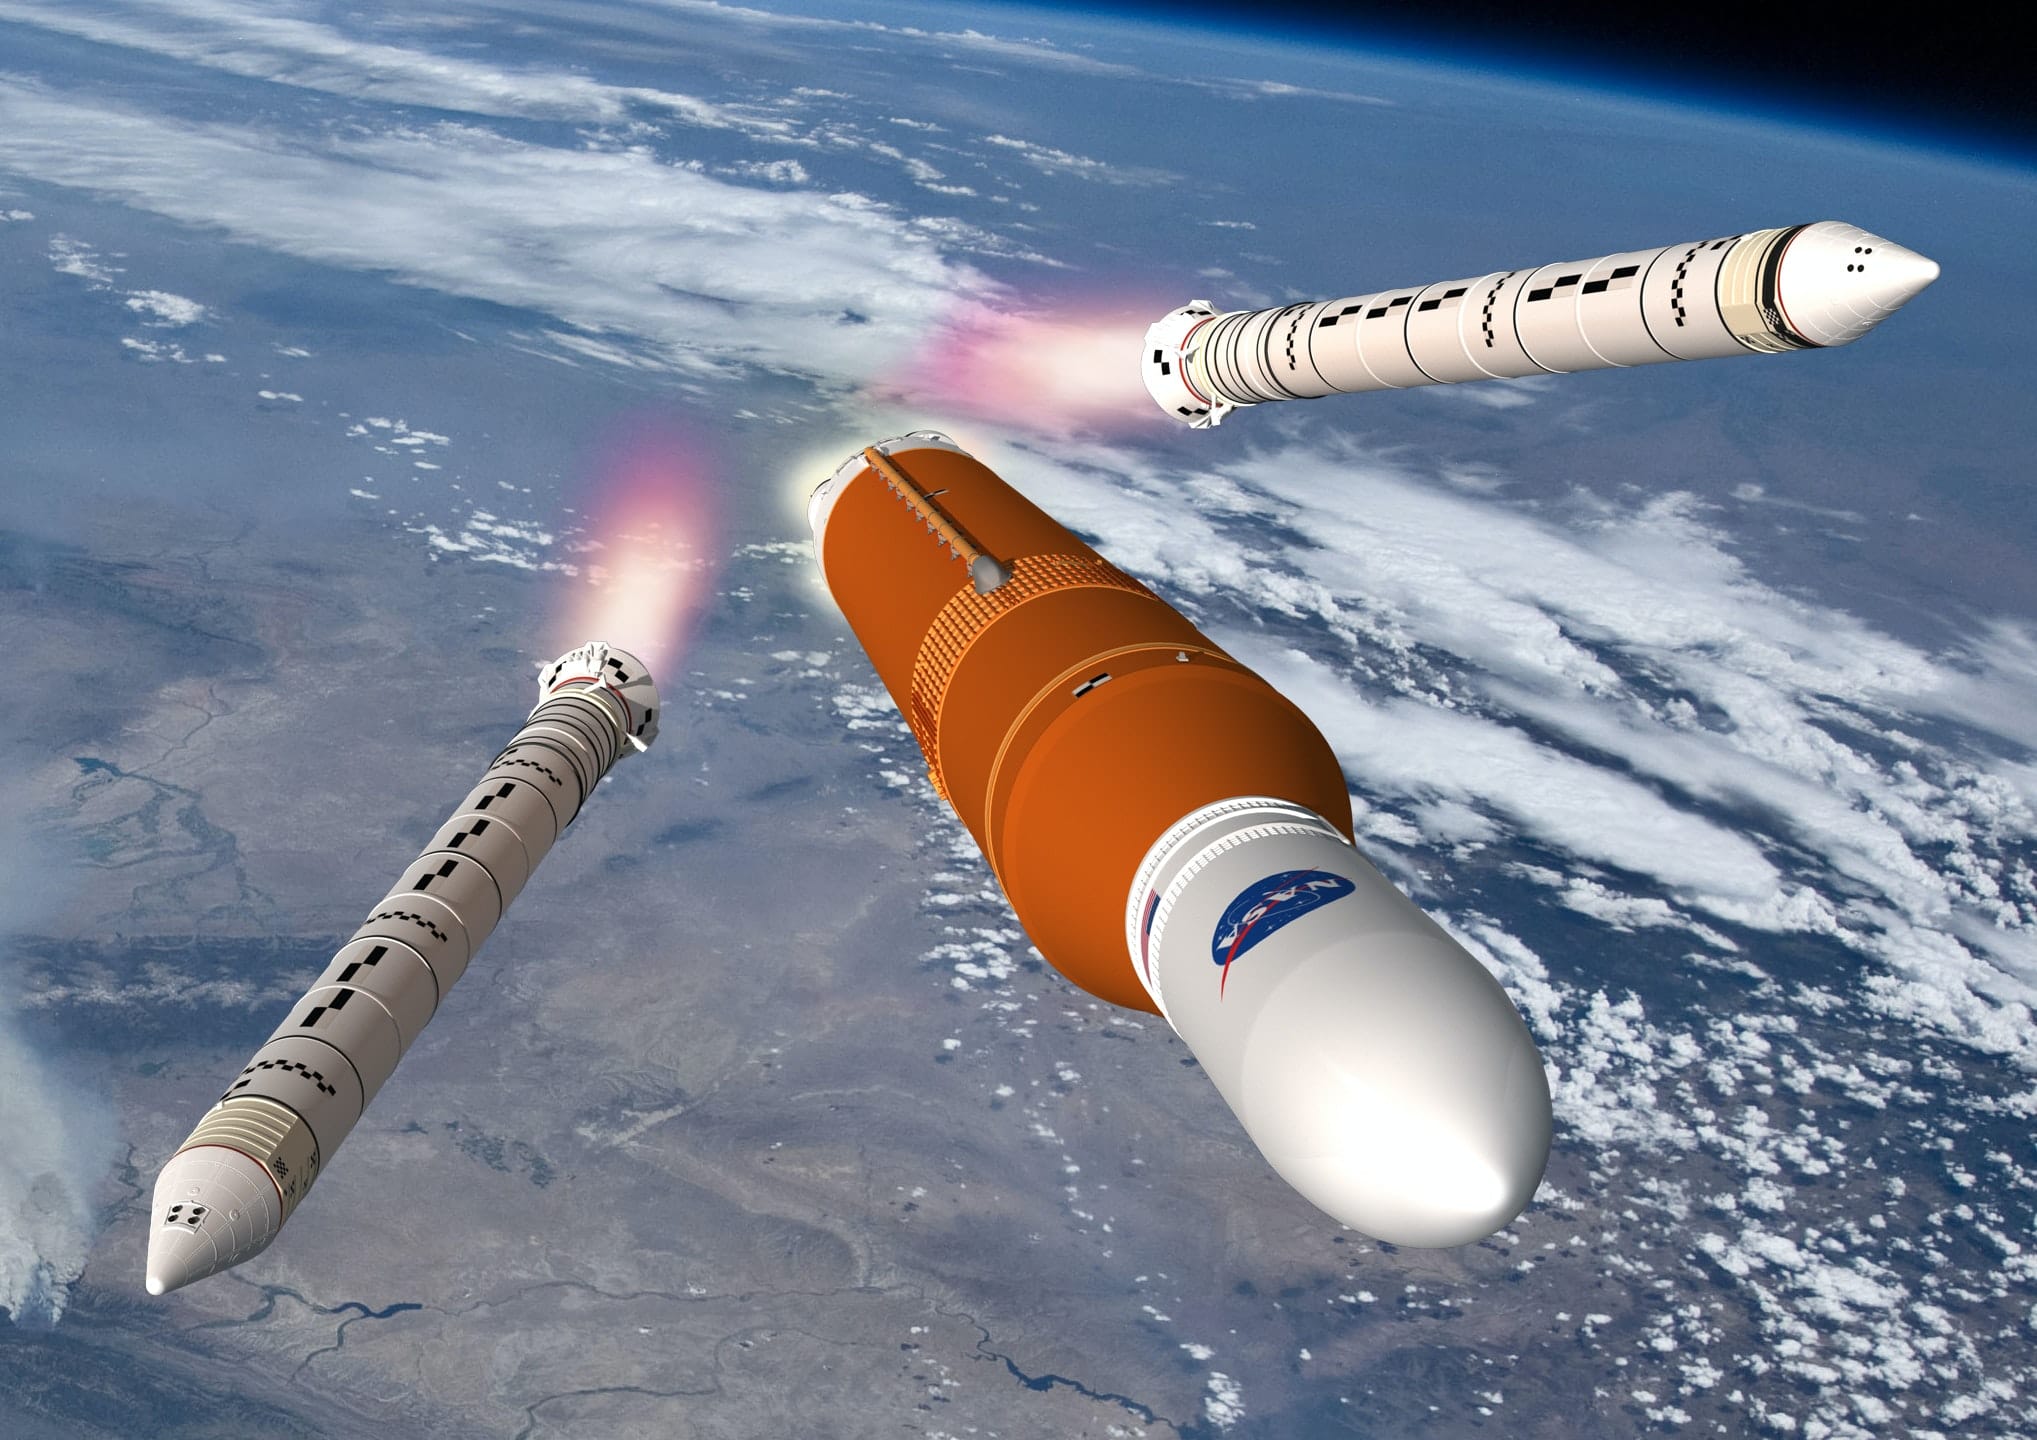 Missioni spaziali del 2022